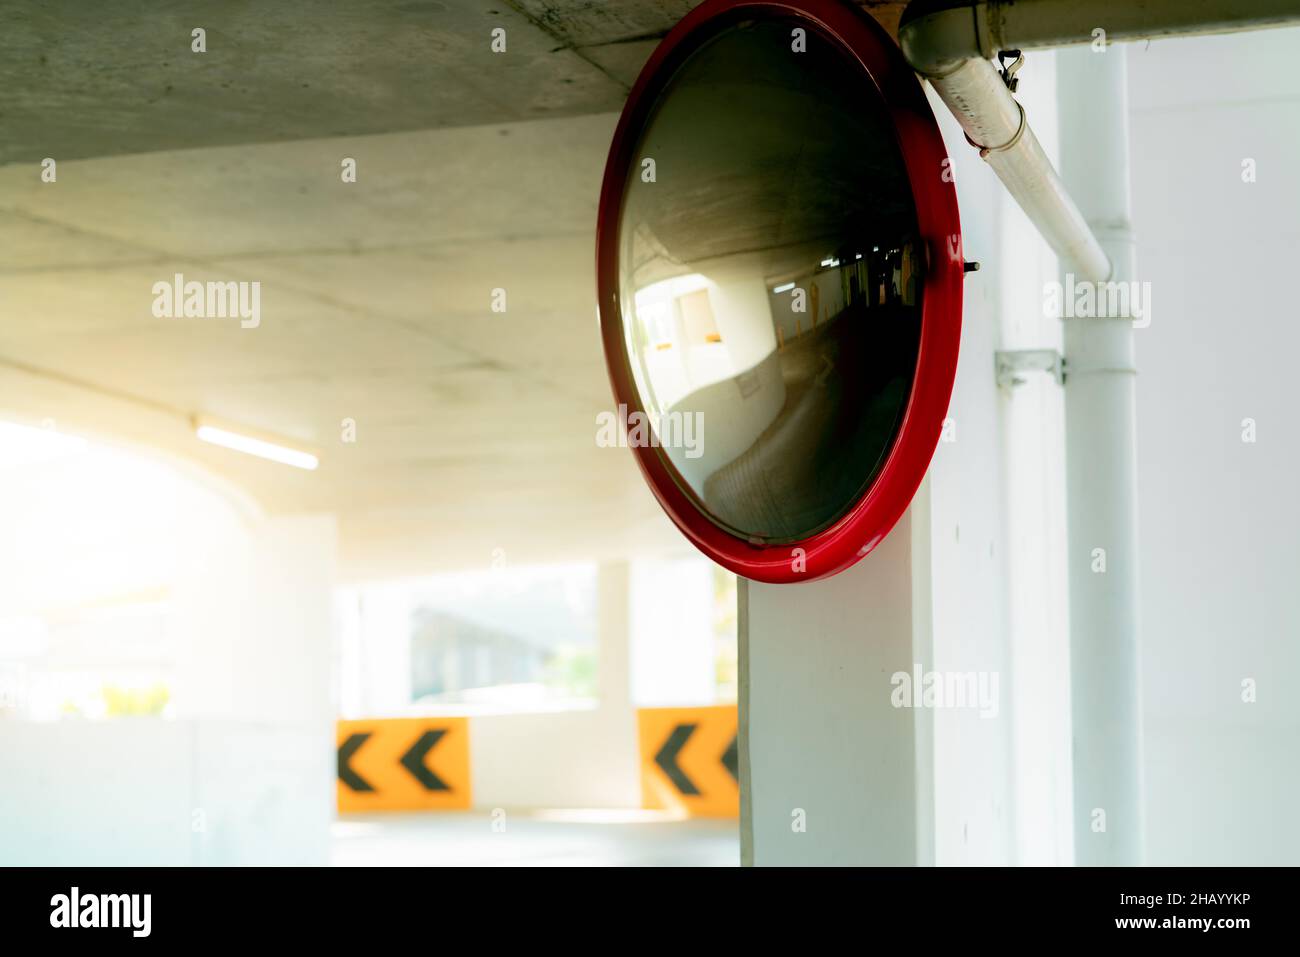 Espejo de seguridad convexo en la curva del aparcamiento interior para reducir el riesgo de accidentes por ángulos muertos o puntos ciegos. Espejo de seguridad circular convexo Foto de stock